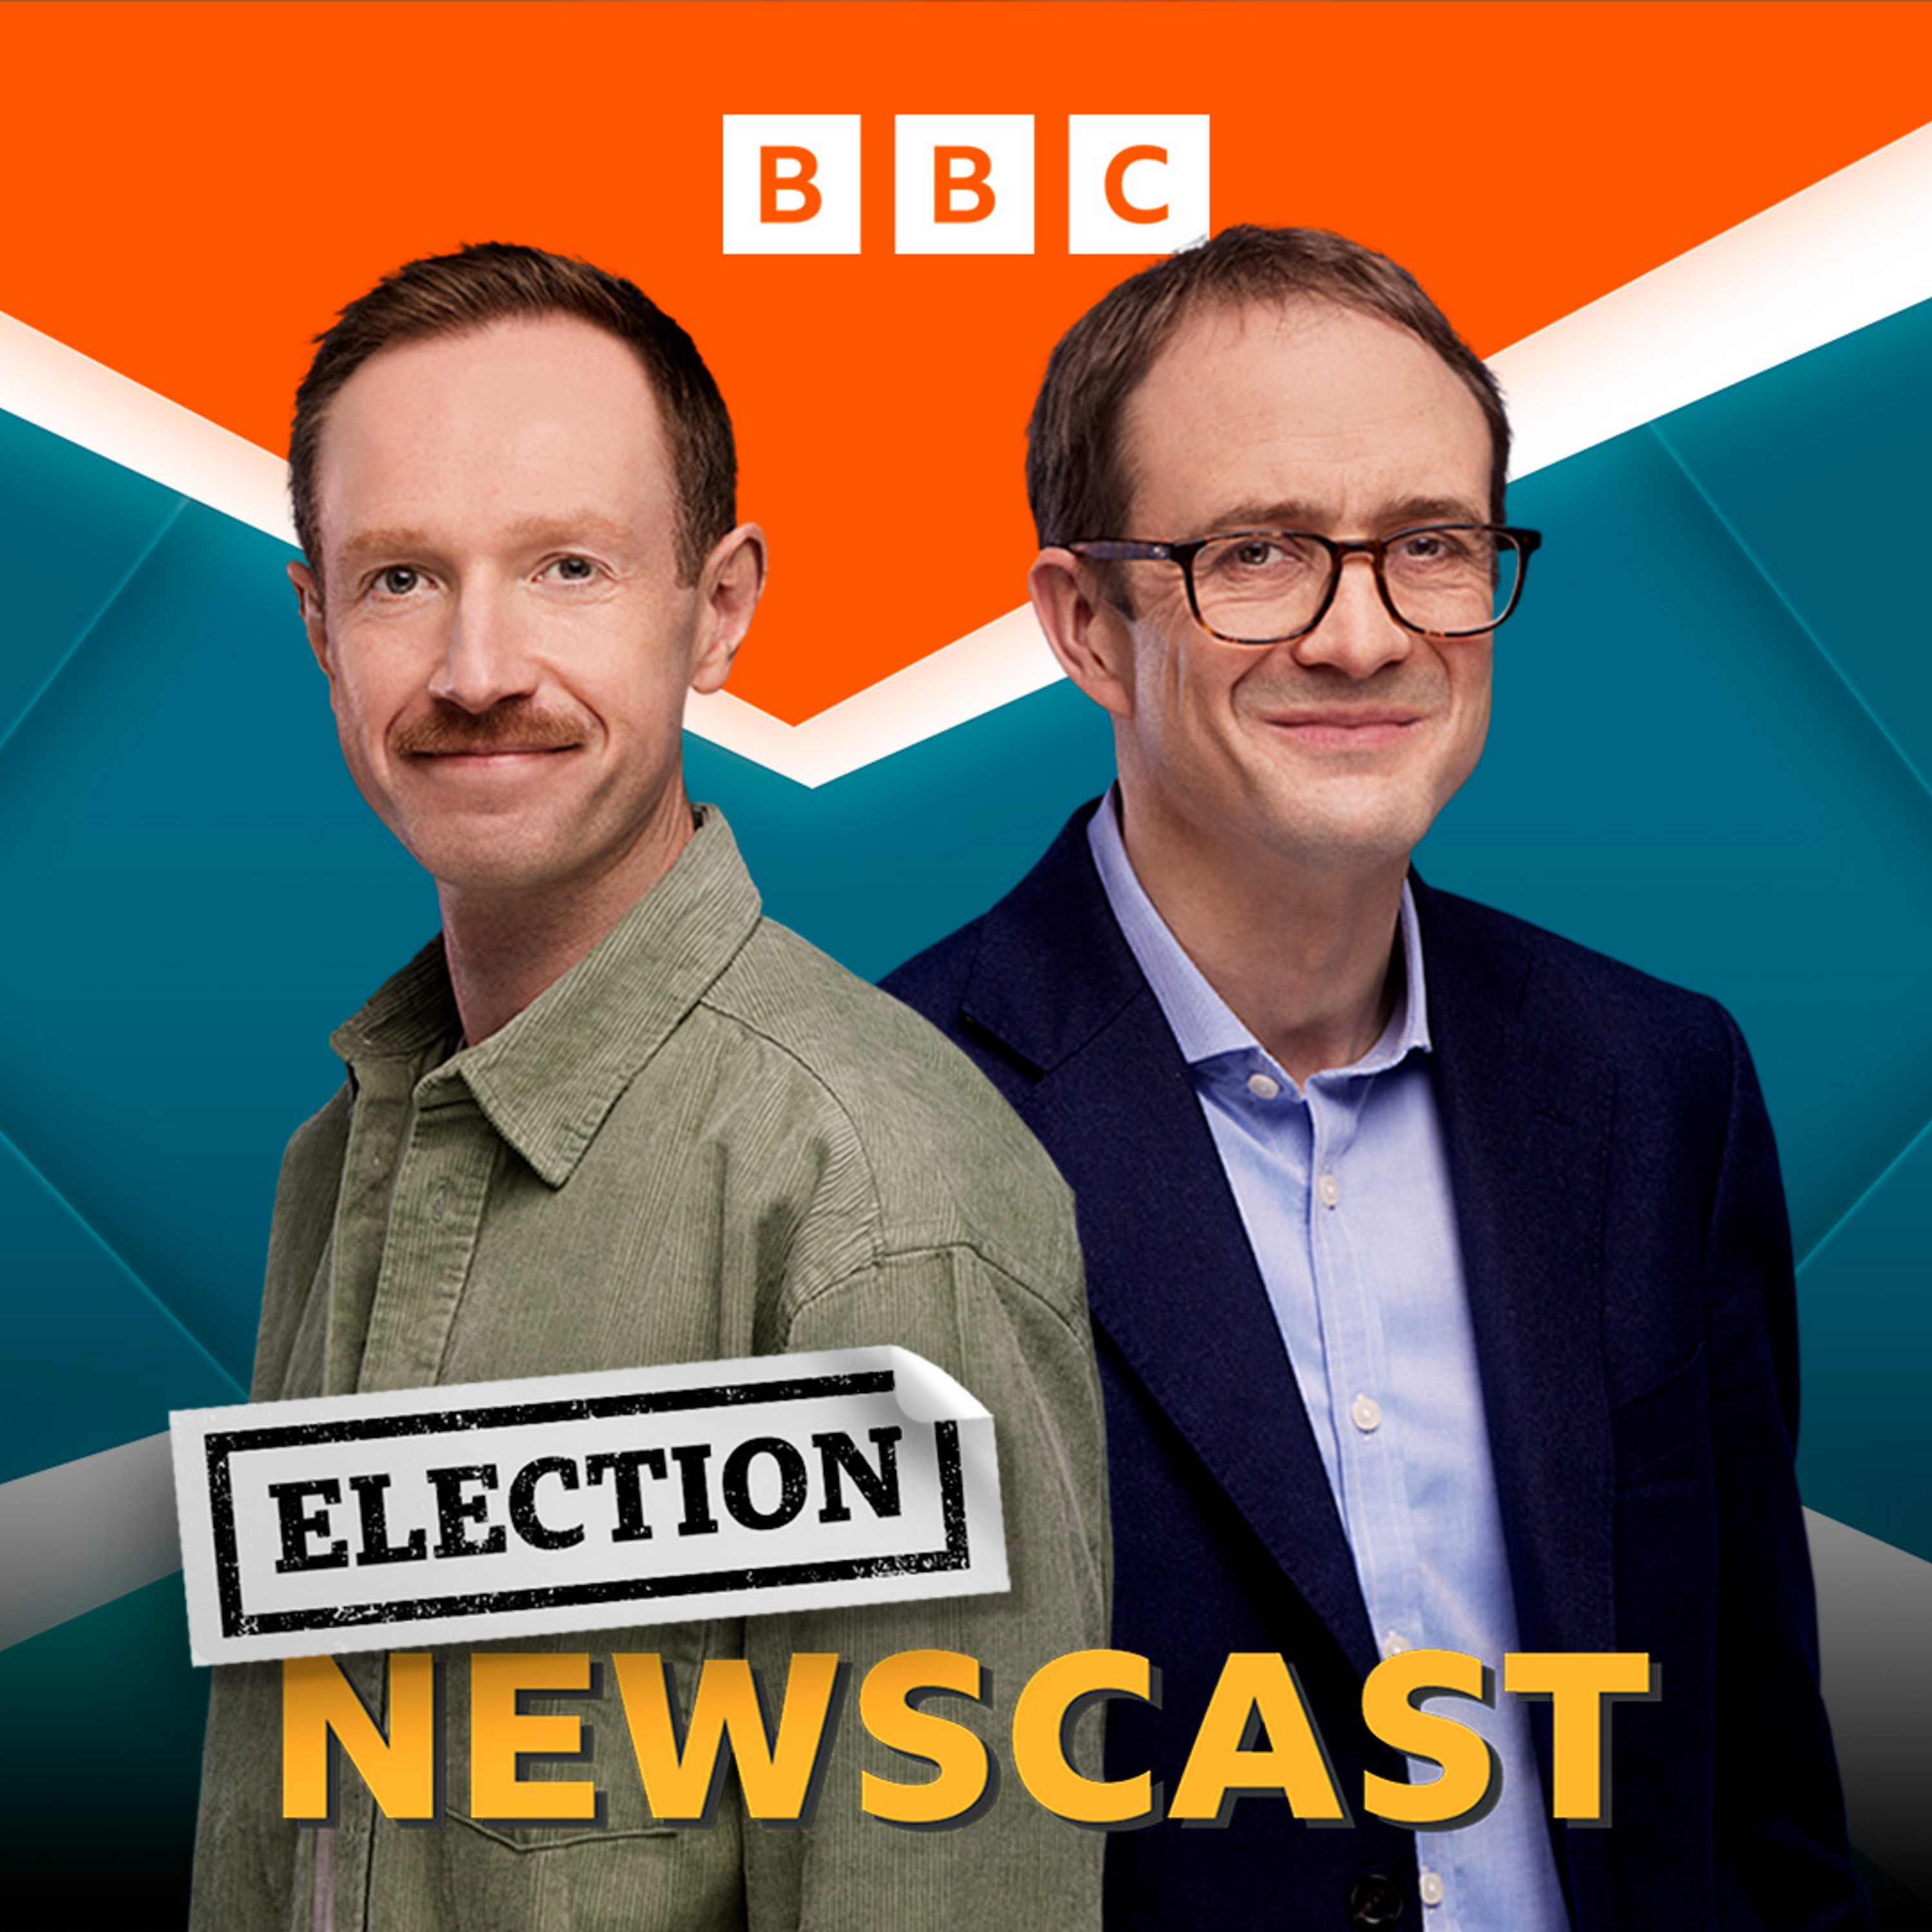 Electioncast: Michael Gove Votes to Leave